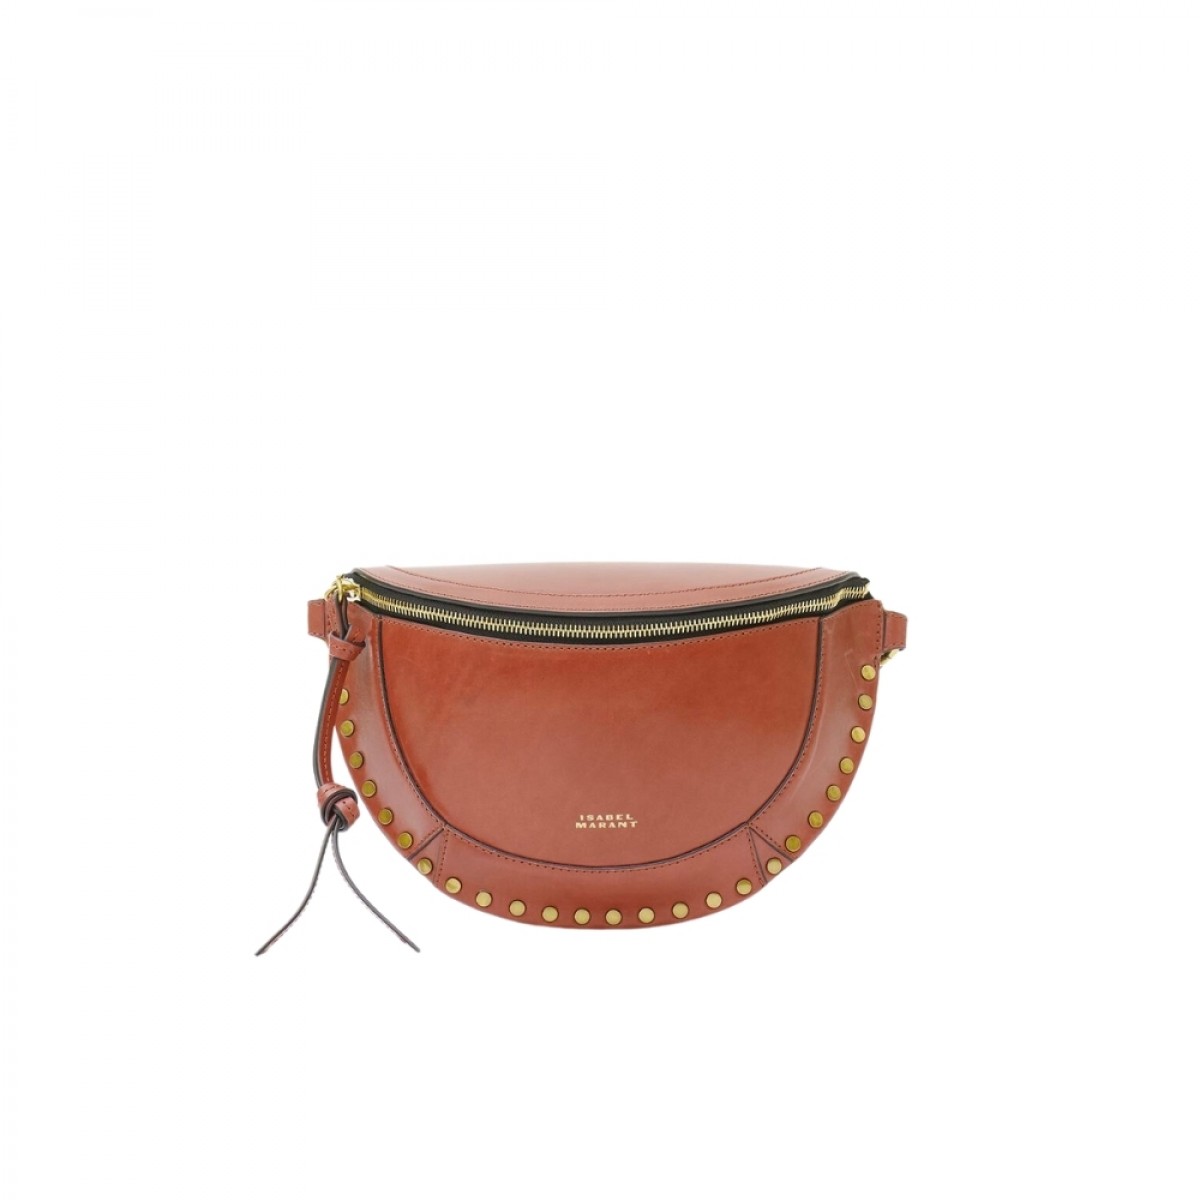 skano leather belt bag - cognac - front